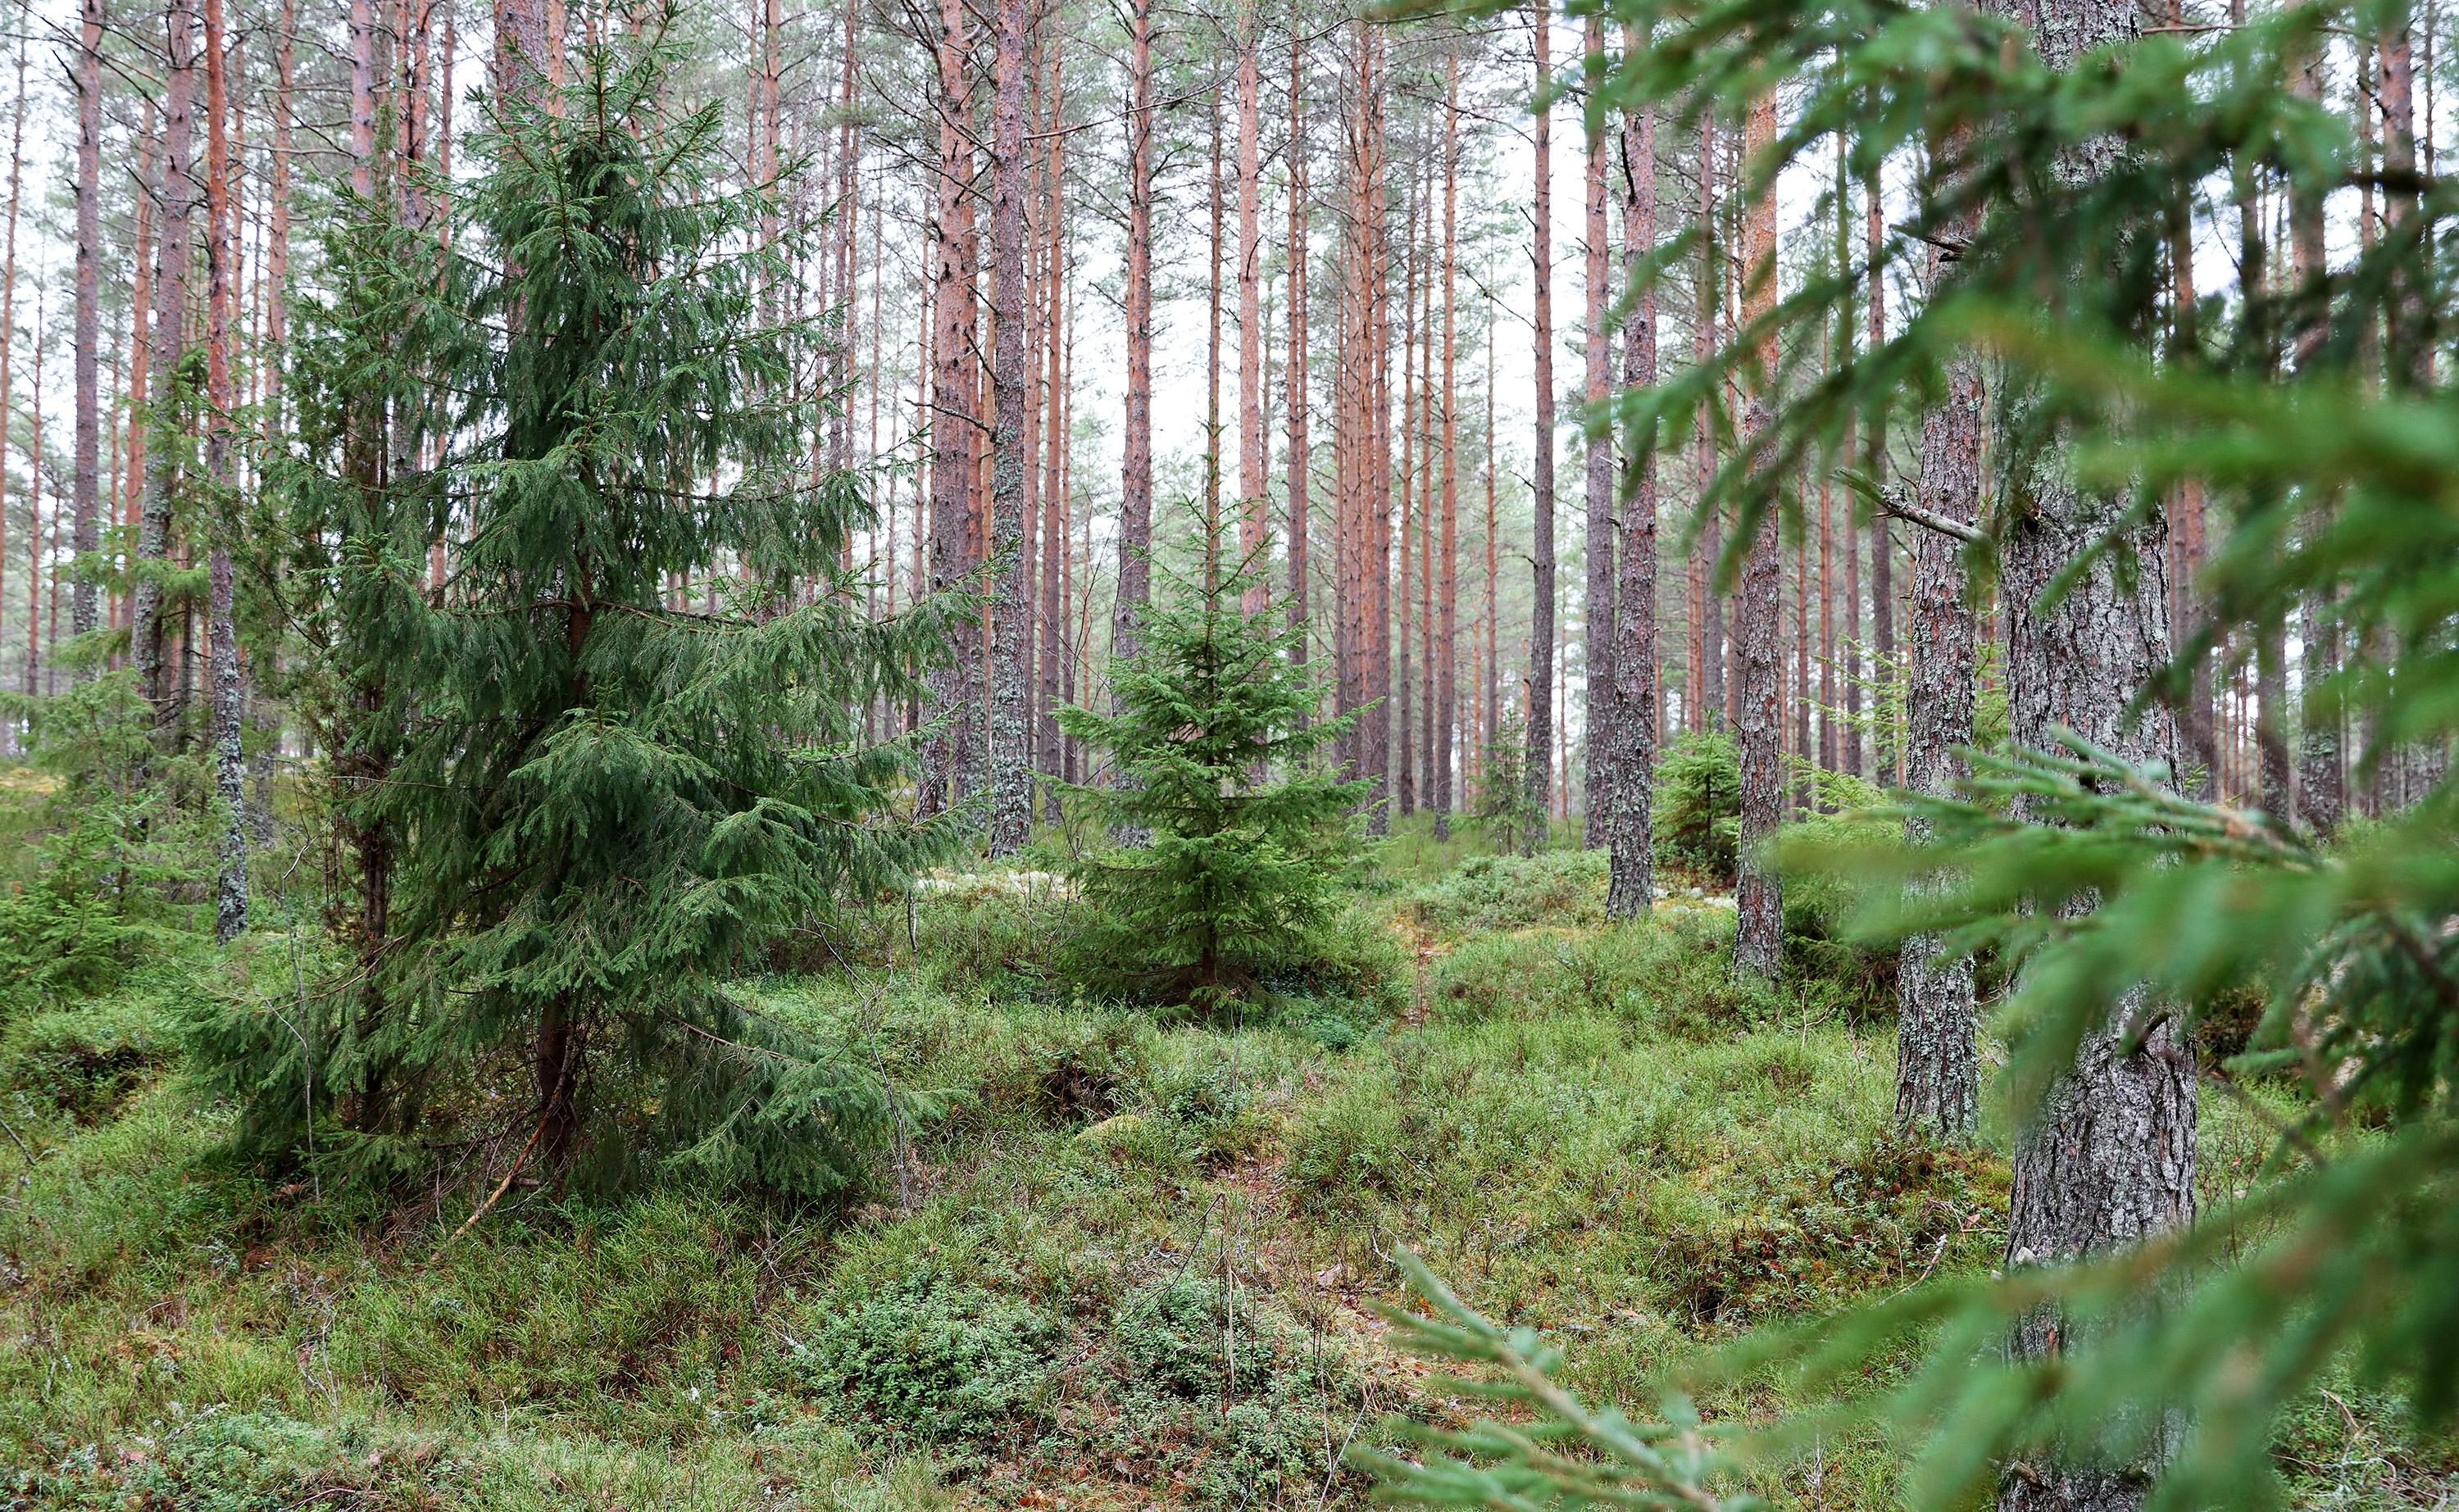 Närbild på skog med höga tallstammar och mindre granar samt lingon- och blåbärsris.